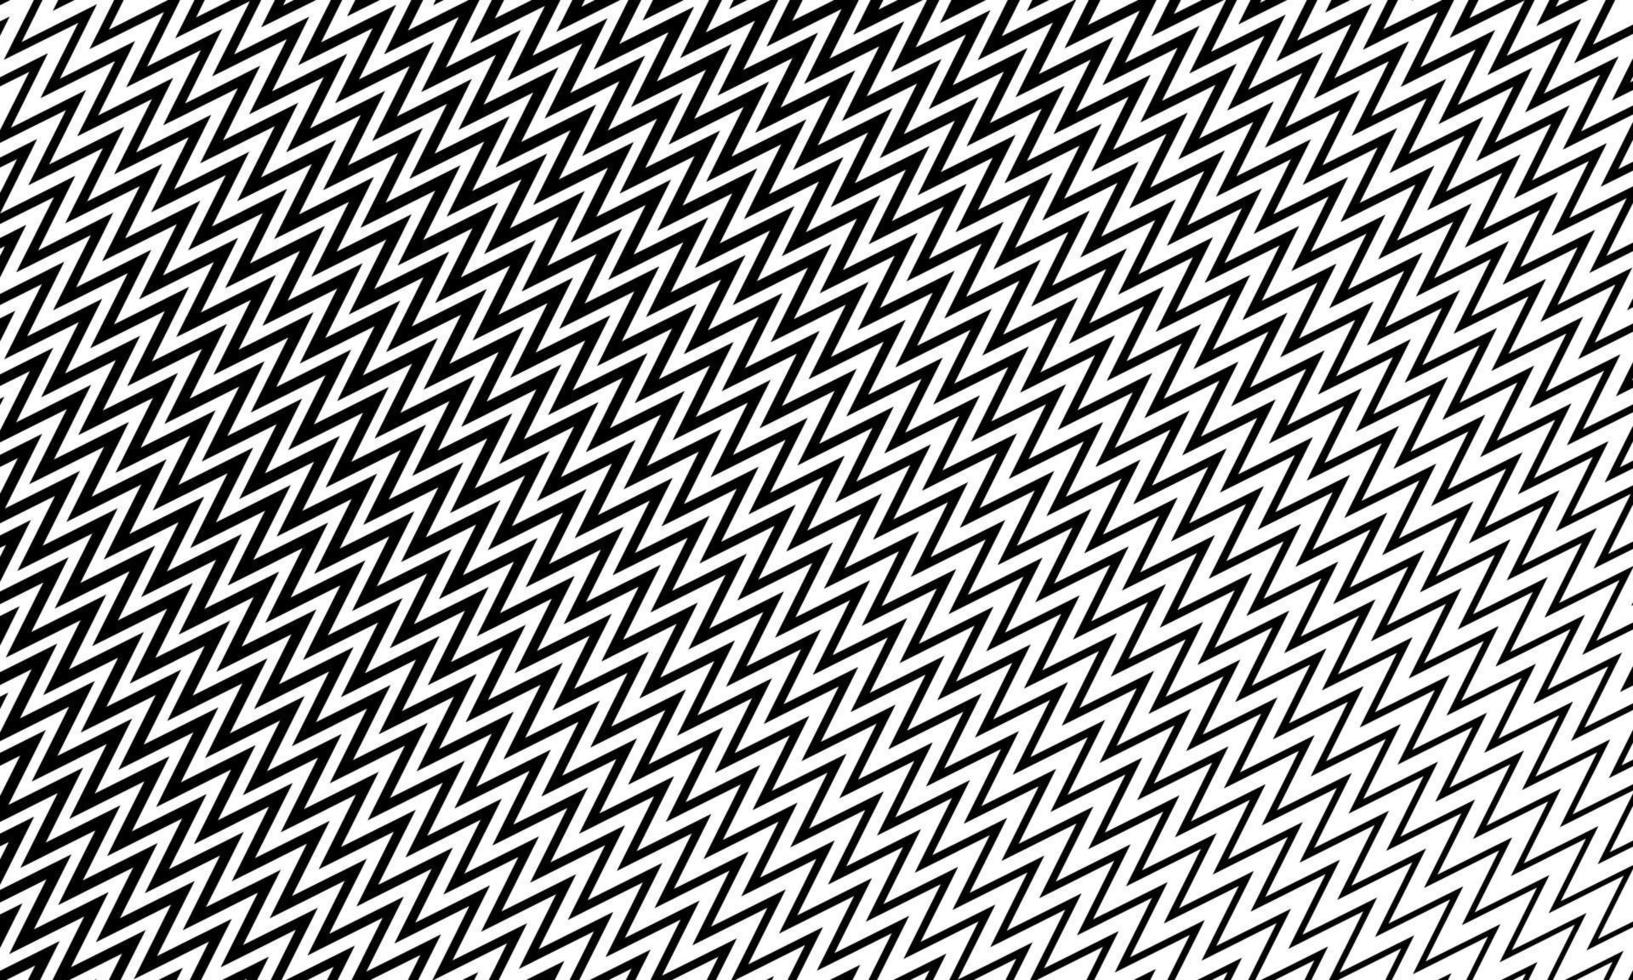 padrão moderno de linhas pretas em zigue-zague vetor